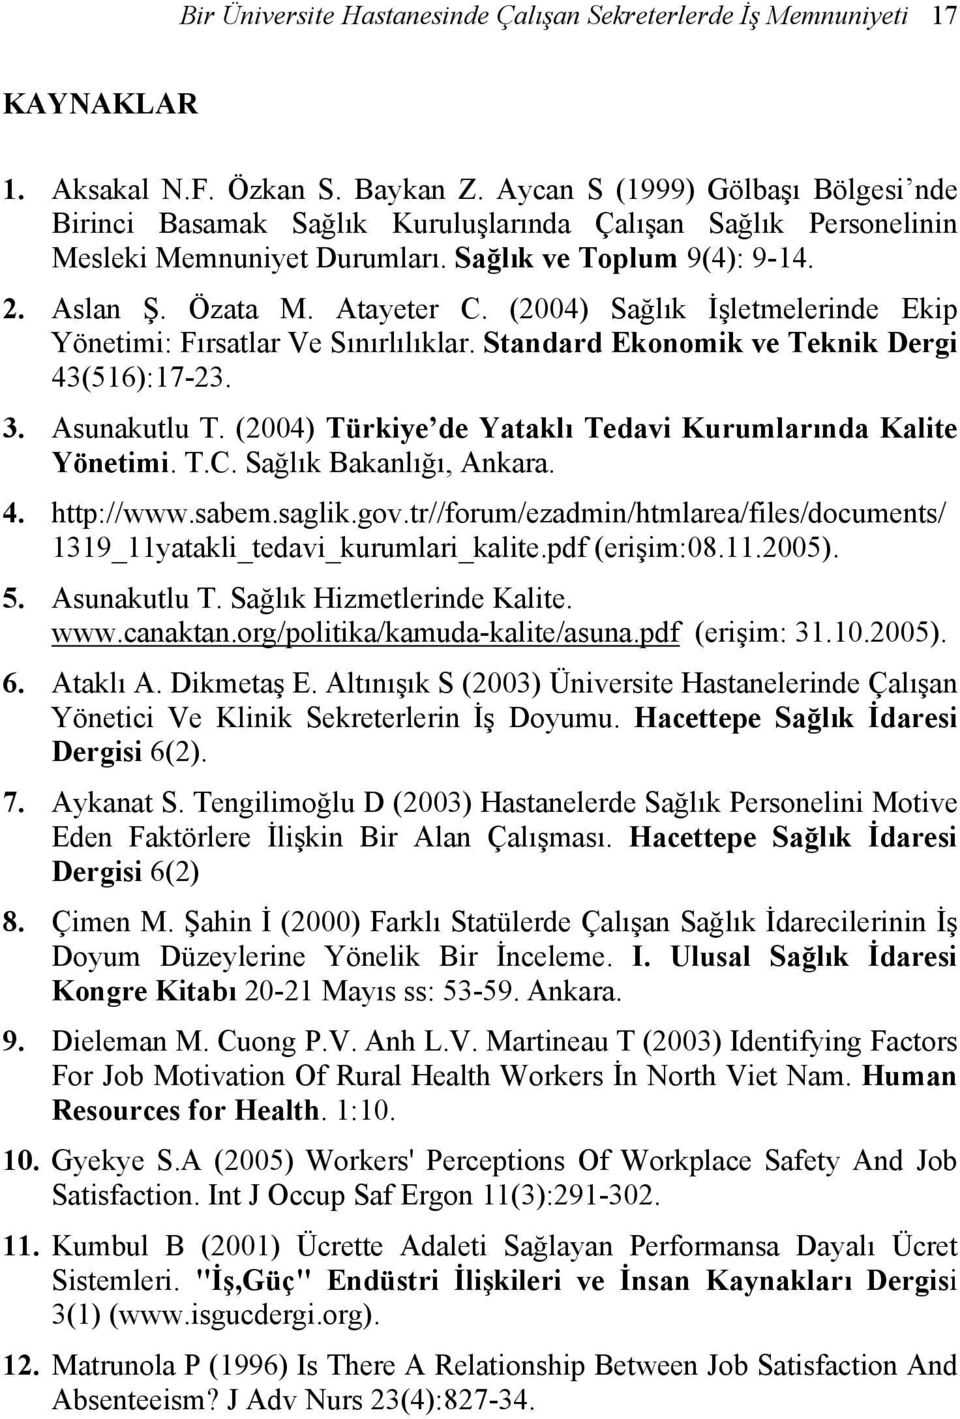 (2004) Sağlık İşletmelerinde Ekip Yönetimi: Fırsatlar Ve Sınırlılıklar. Standard Ekonomik ve Teknik Dergi 43(516):17-23. 3. Asunakutlu T. (2004) Türkiye de Yataklı Tedavi Kurumlarında Kalite Yönetimi.